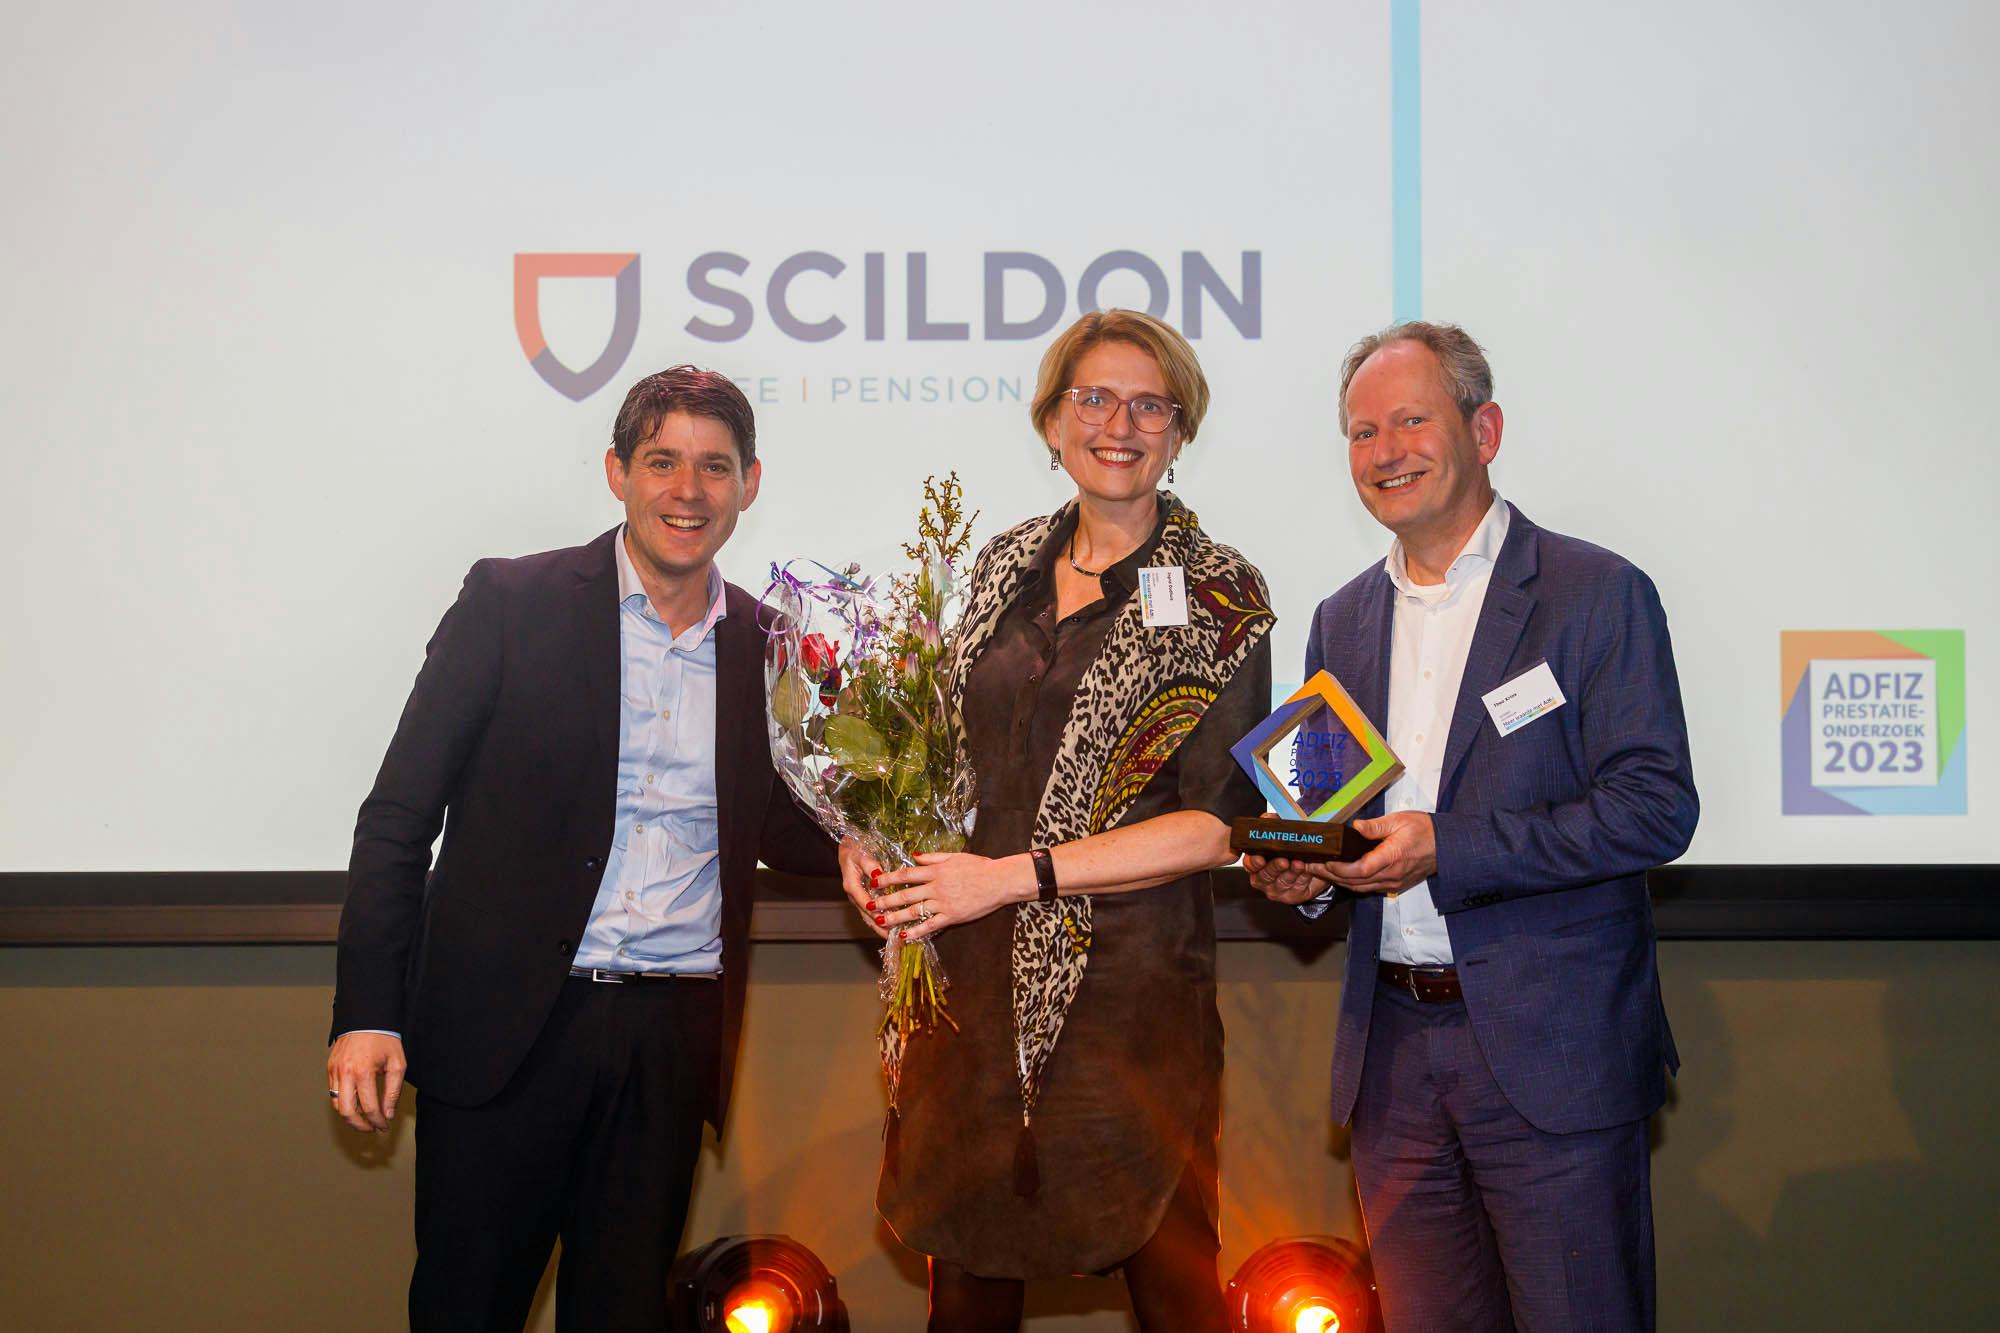 Adfiz-winnaar Scildon: een waardevol product voor 2 miljoen huurders (video)